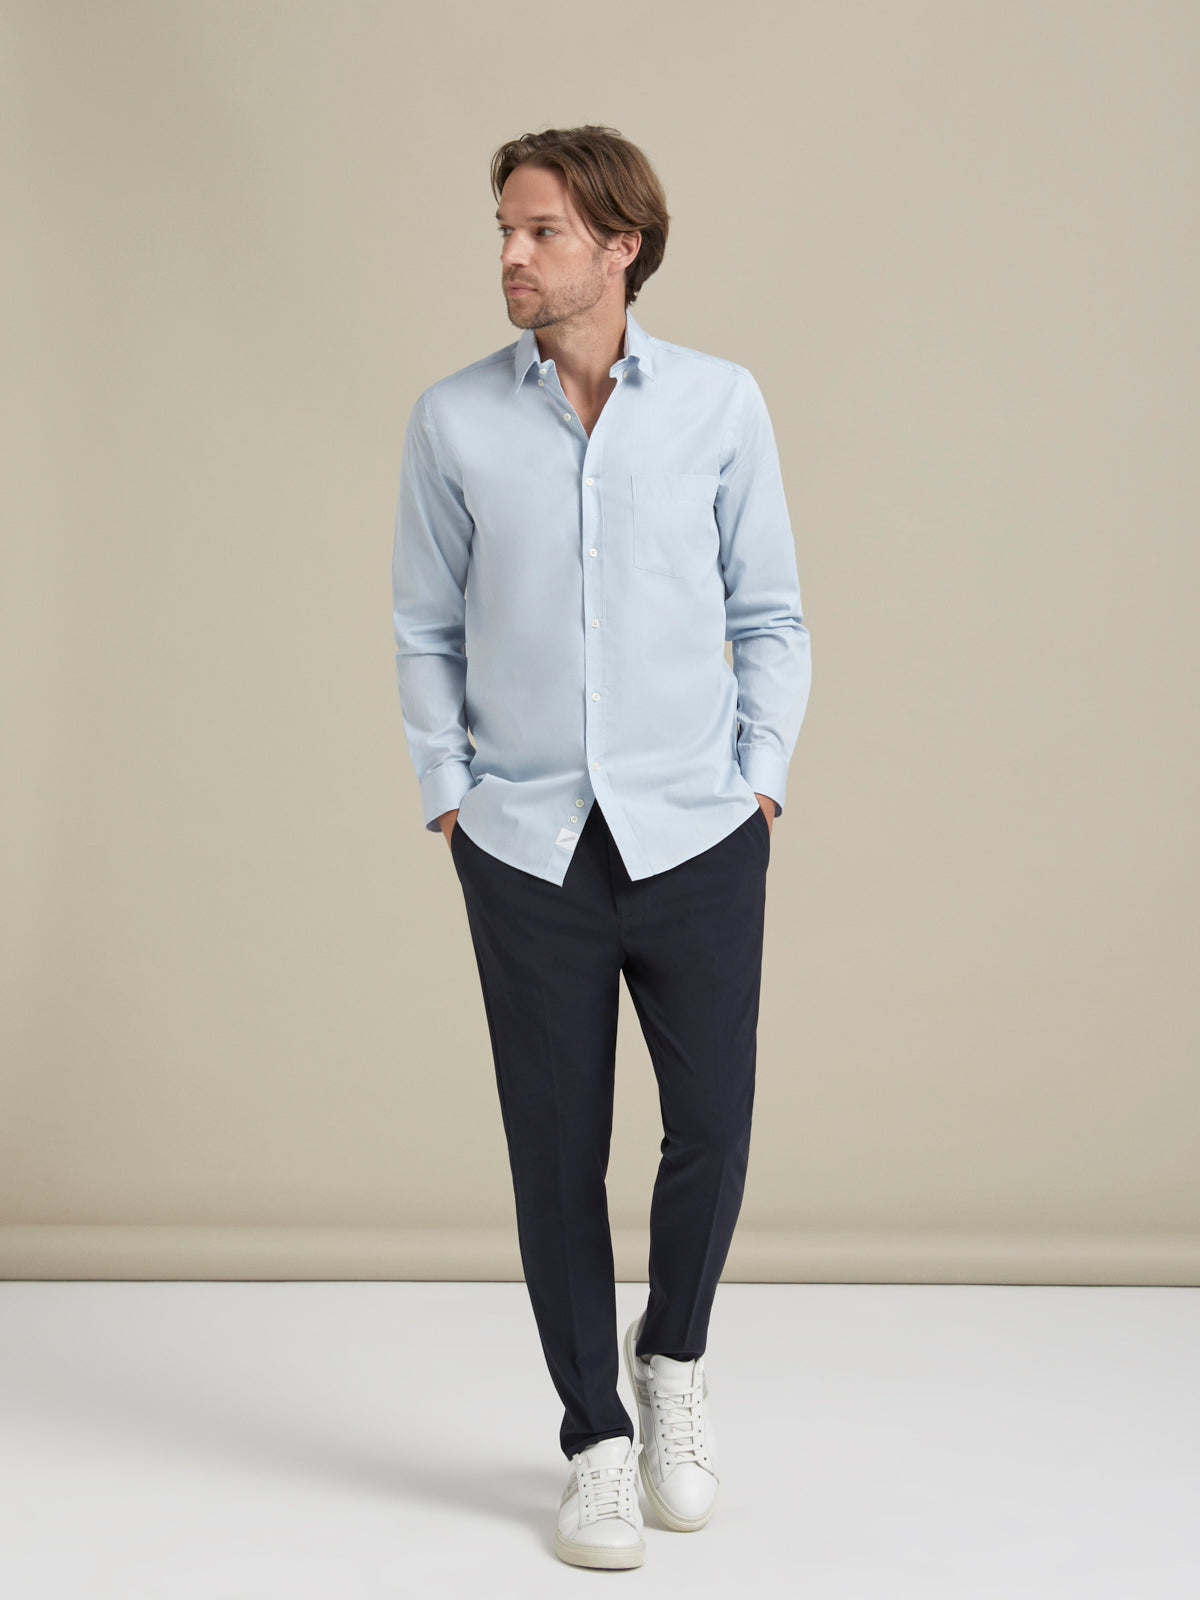 %100 Pamuk Poplin Mavi Gömlek - Cotton Shirt / Sky Blue